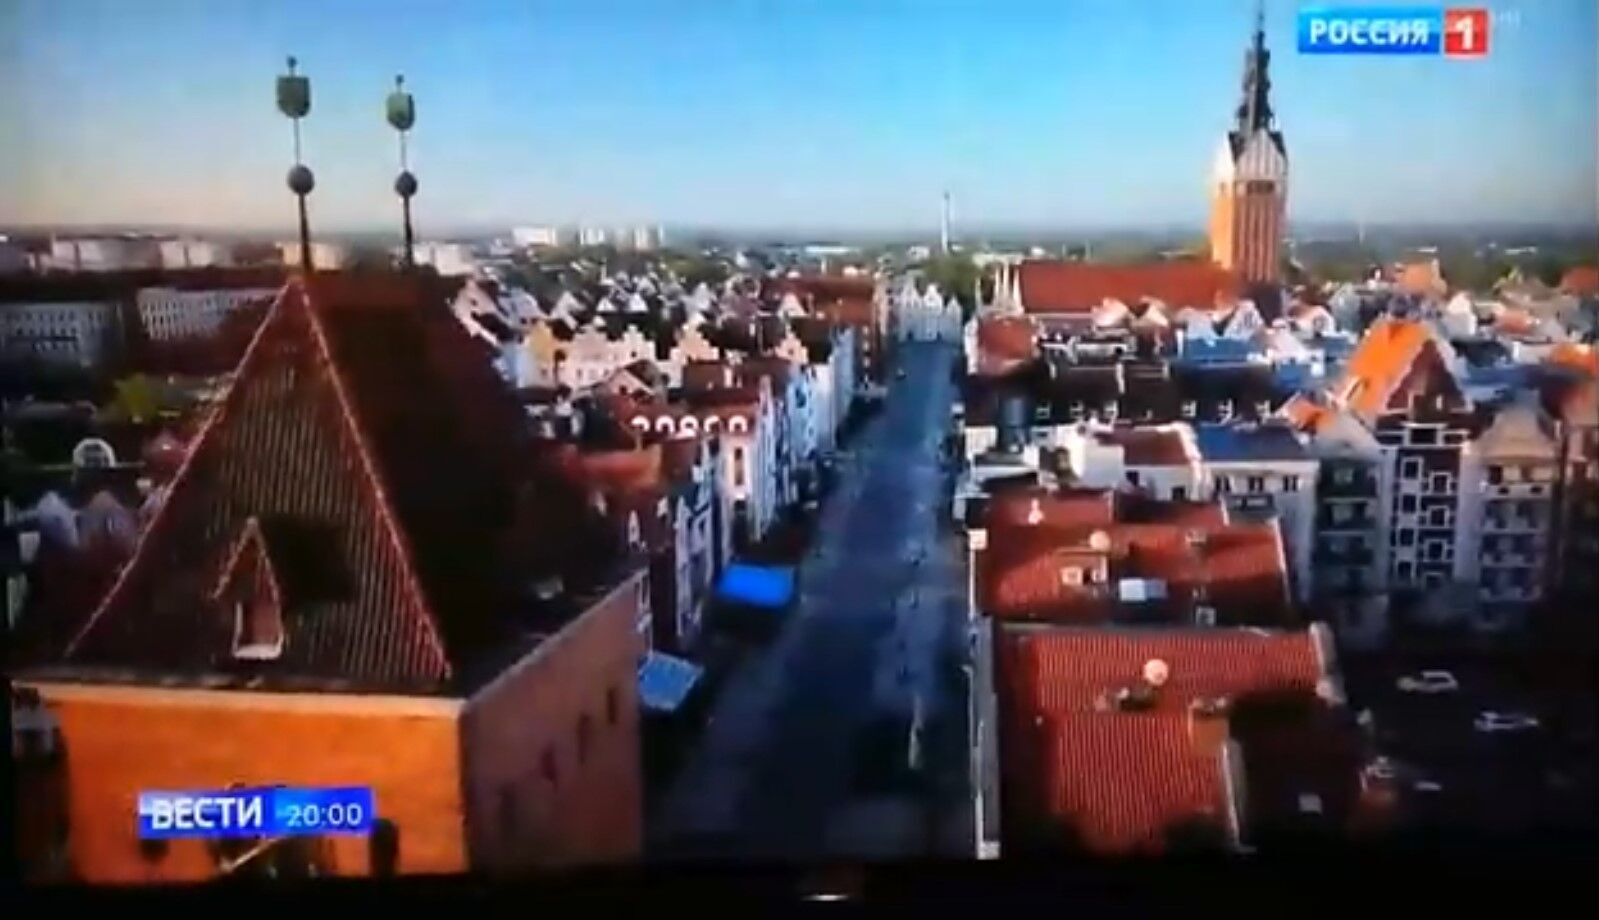 Пропагандисты Путина похвастались видео "цветущего Калининграда", но оконфузились: на кадрах была Польша. Видео